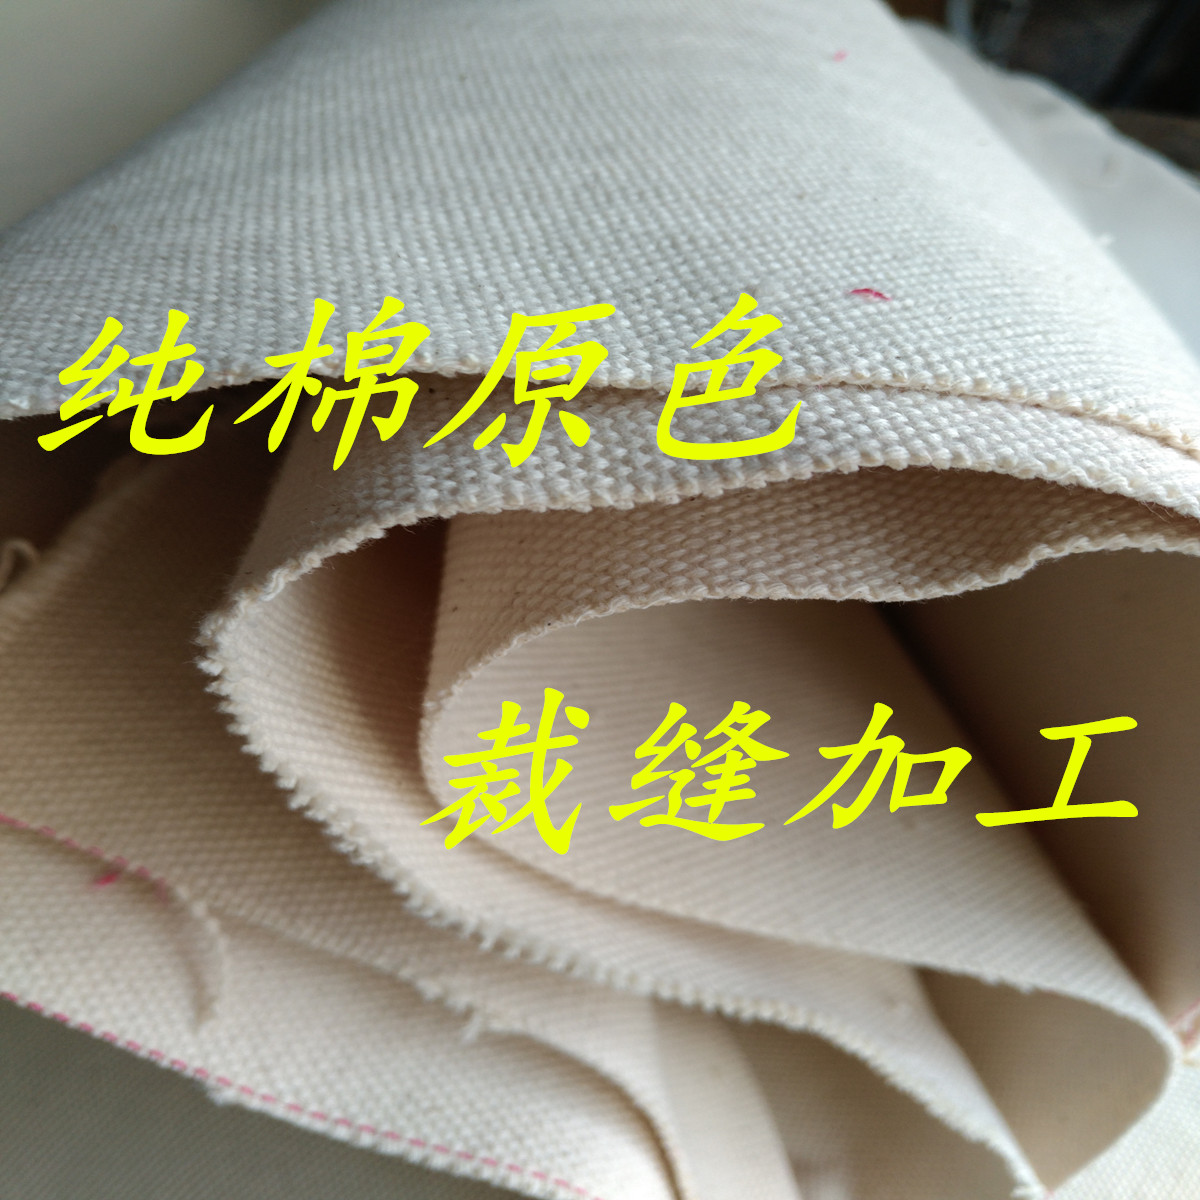 纯棉涤纶厚帆布加工订定制作 布料来料来图加工袋包套垫制品单批